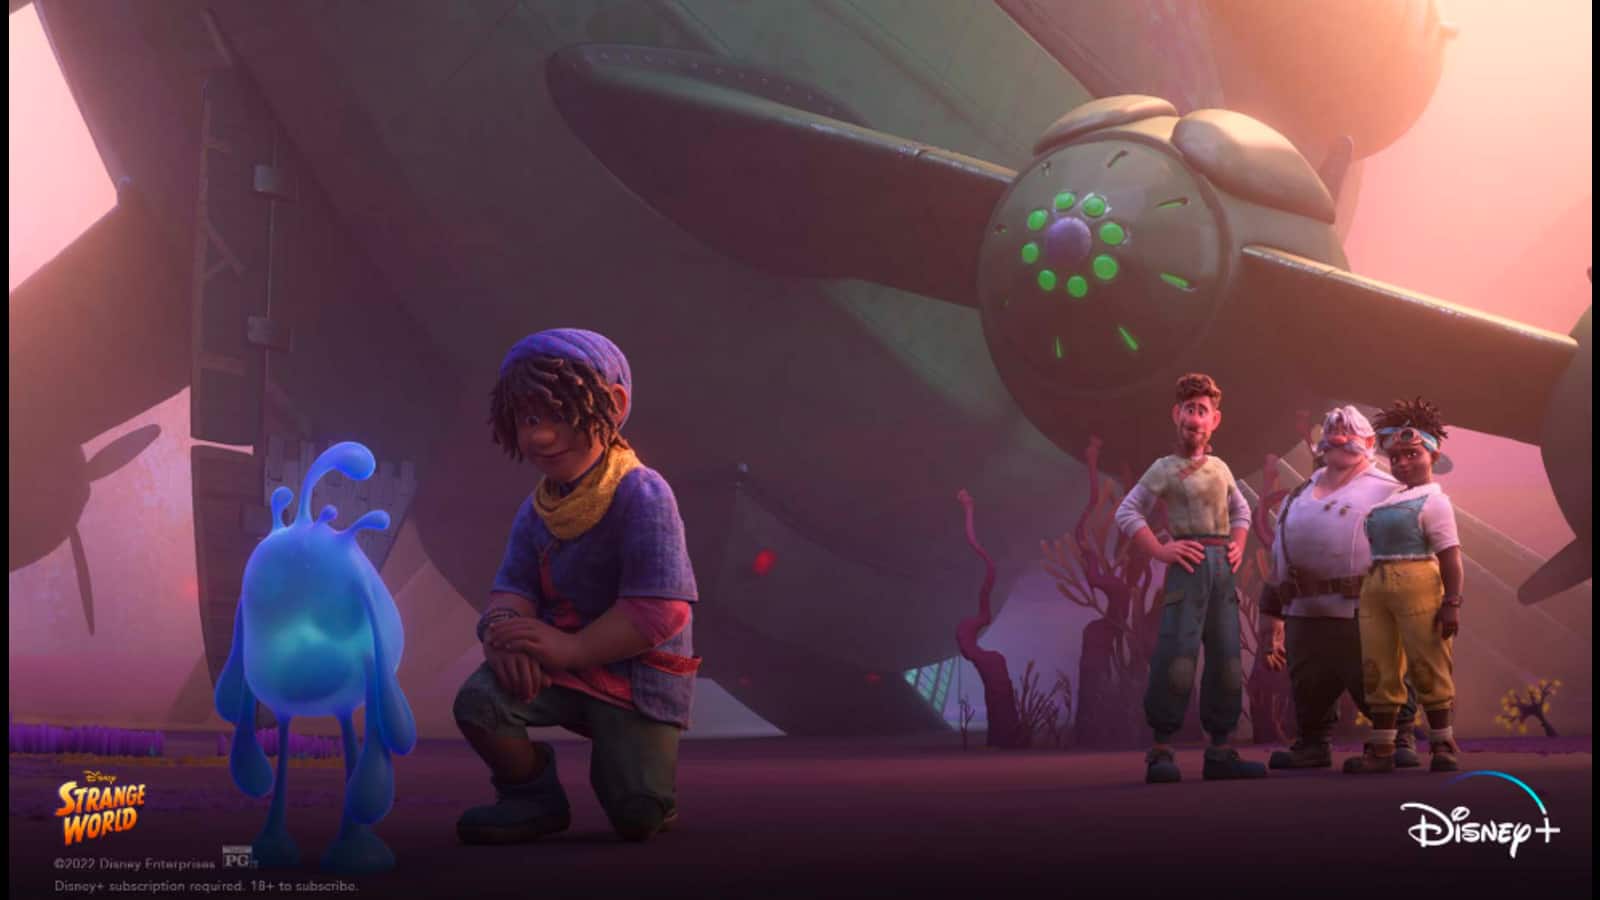 Disney+ Hotstar to stream new animation film 'Strange World'